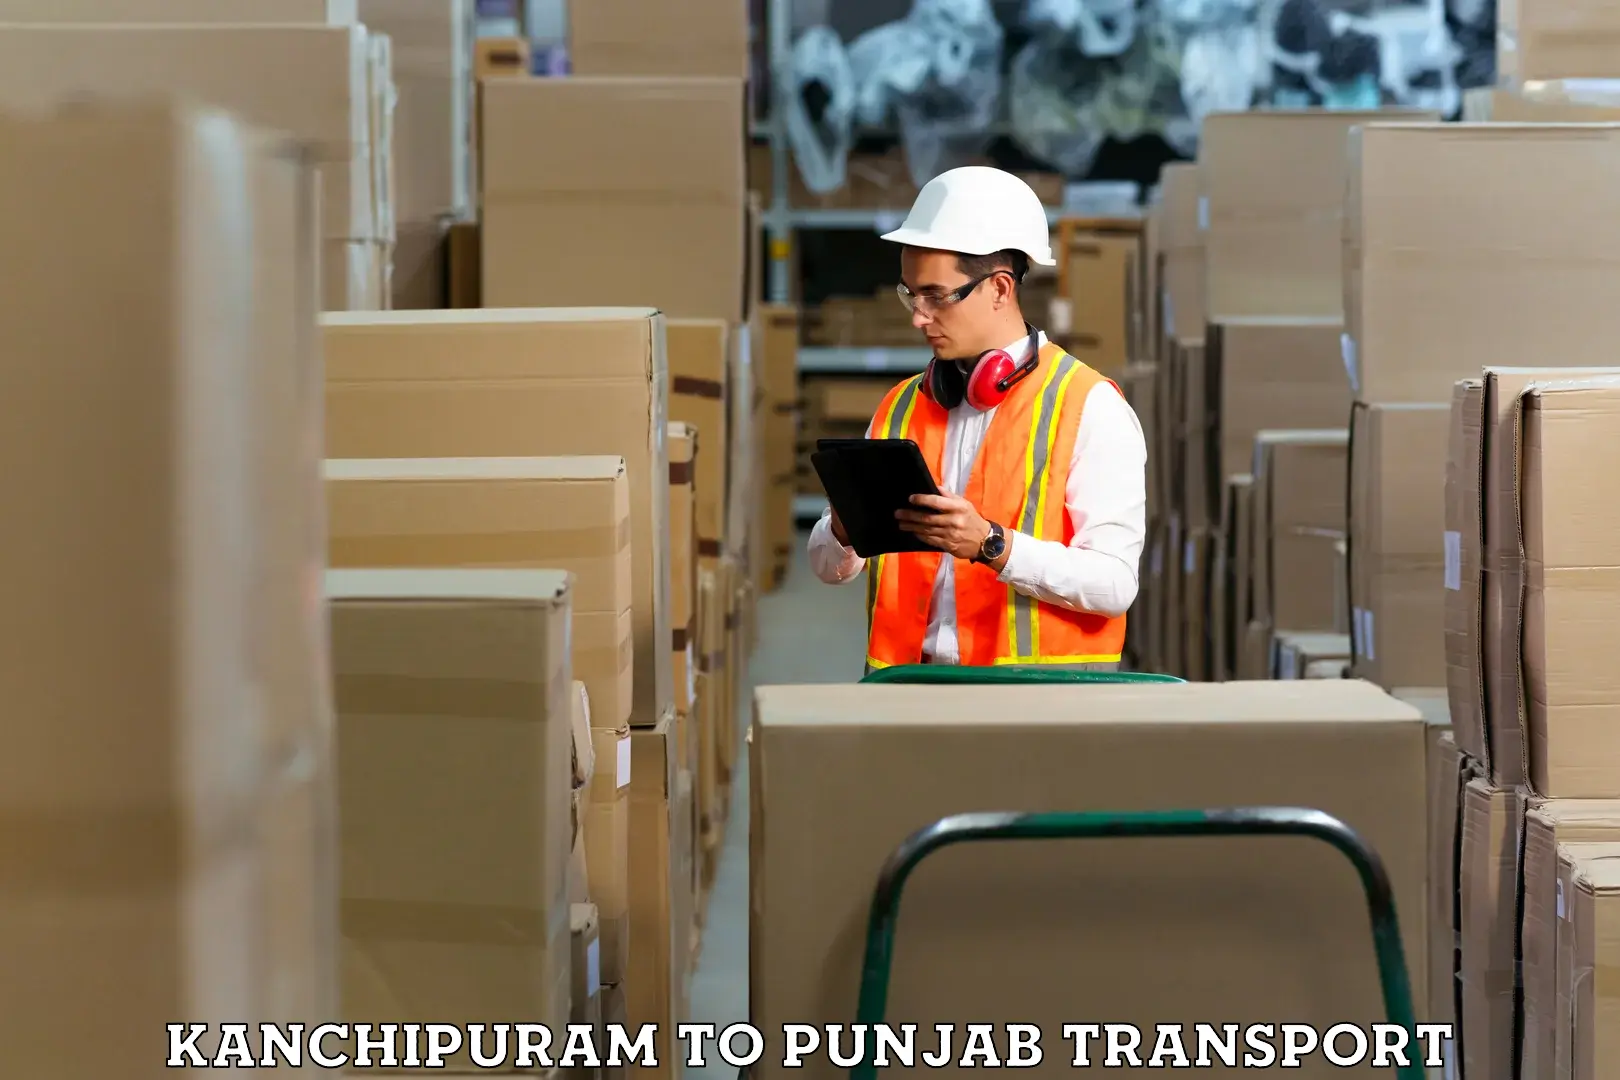 Container transport service Kanchipuram to Tarsikka